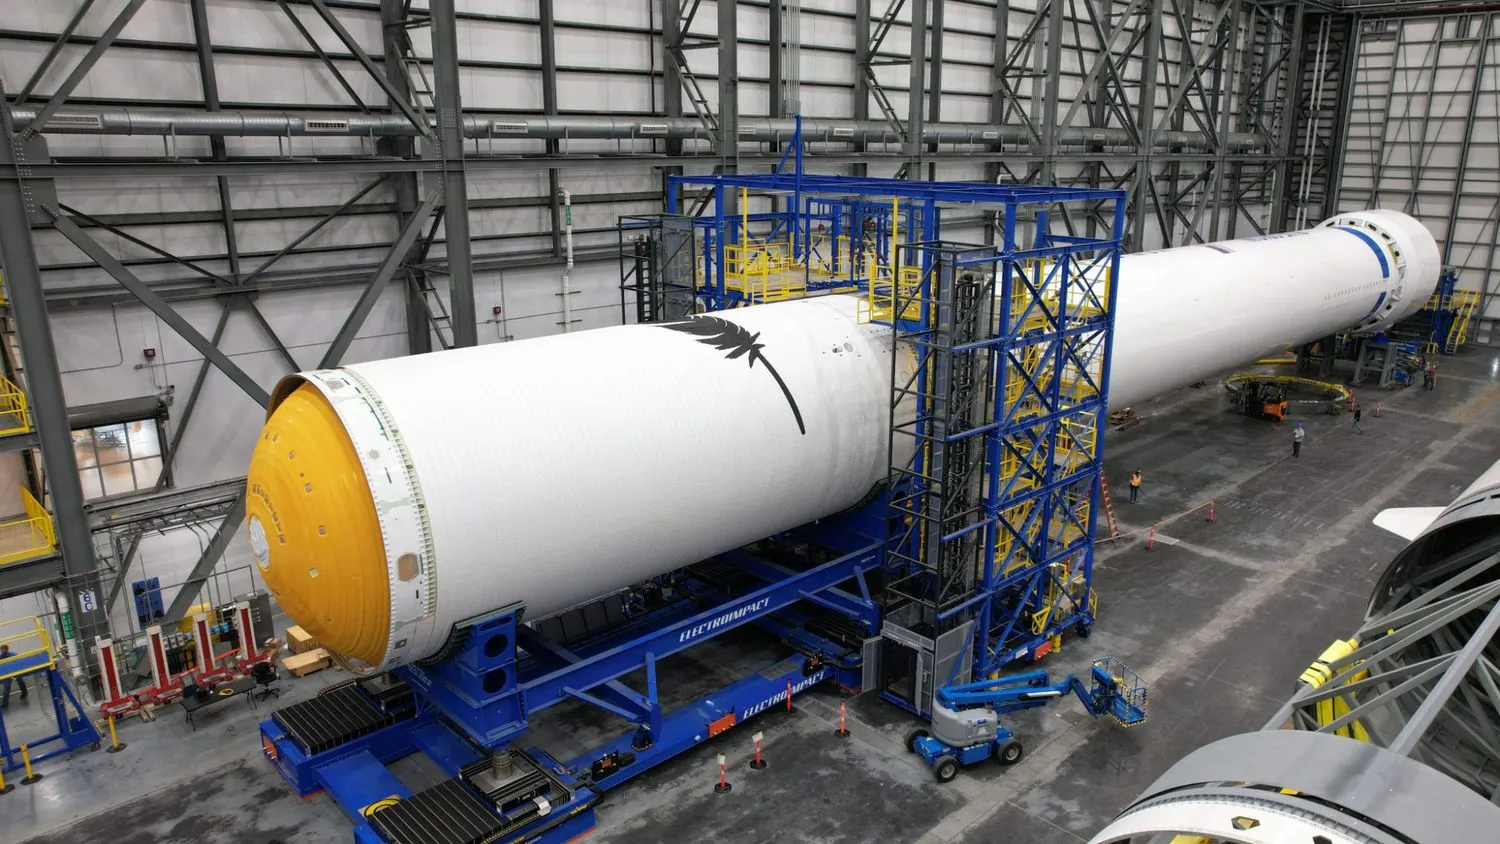 Mehr über den Artikel erfahren Blue Origin verbindet 2 Stufen der New-Glenn-Rakete zum ersten Mal (Foto)